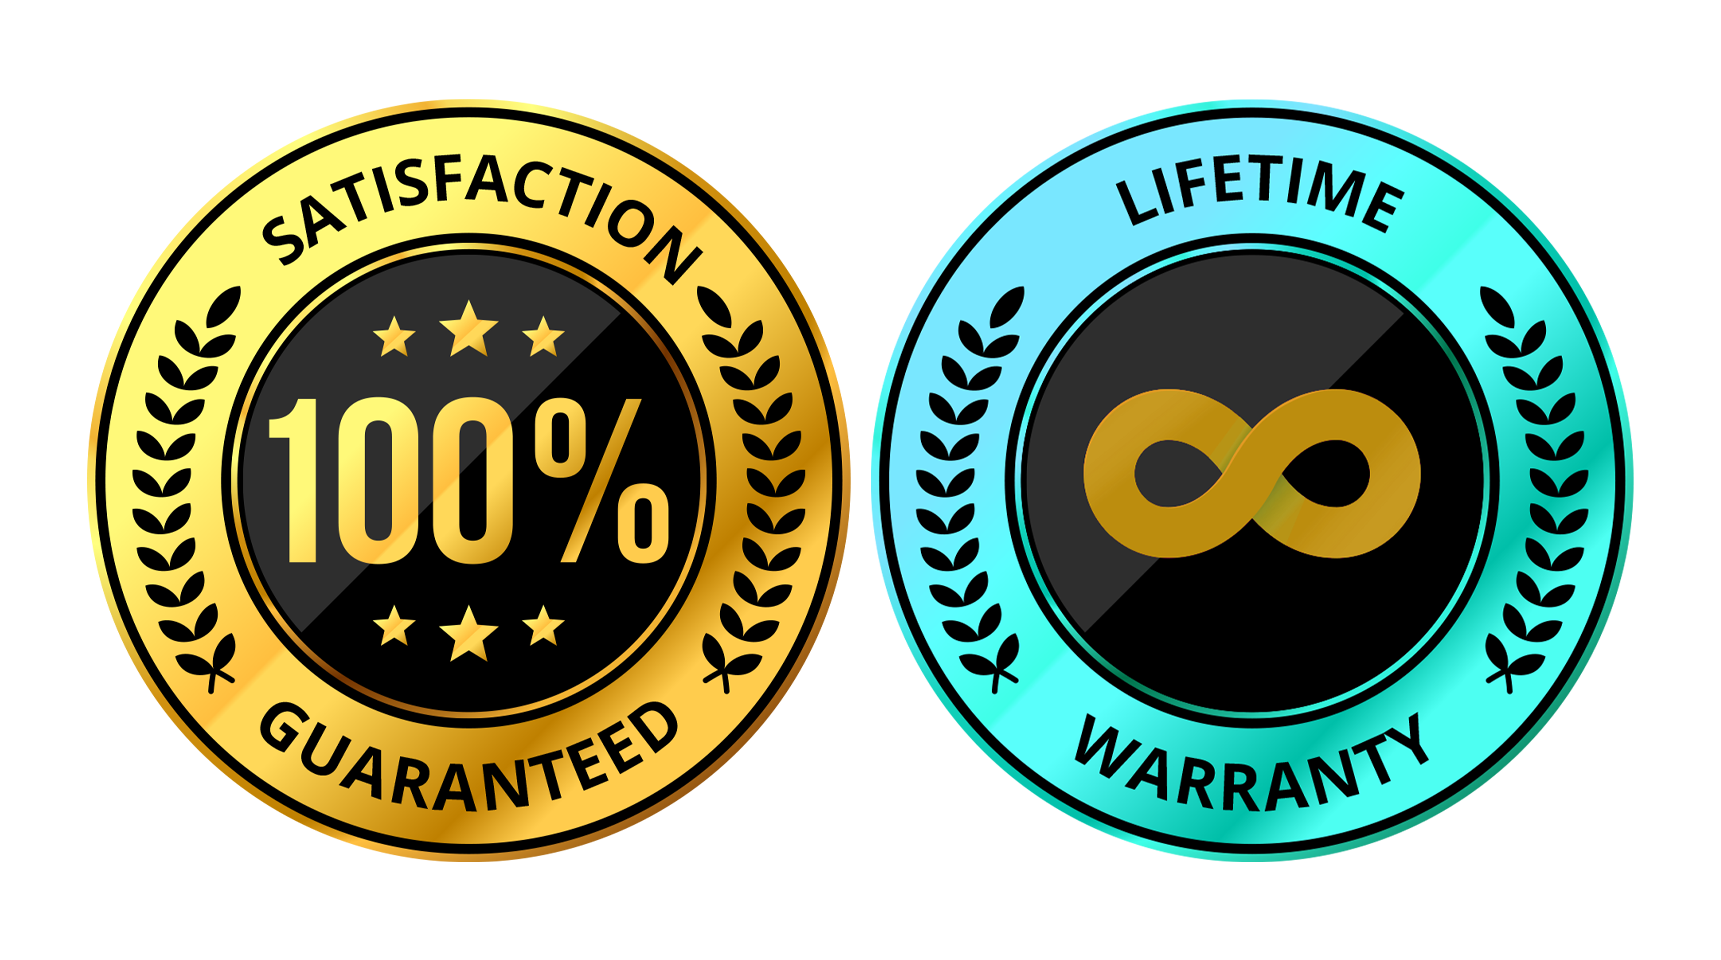 100% Satisfaction Guaranteed Badge and Lifetime Warranty Badge